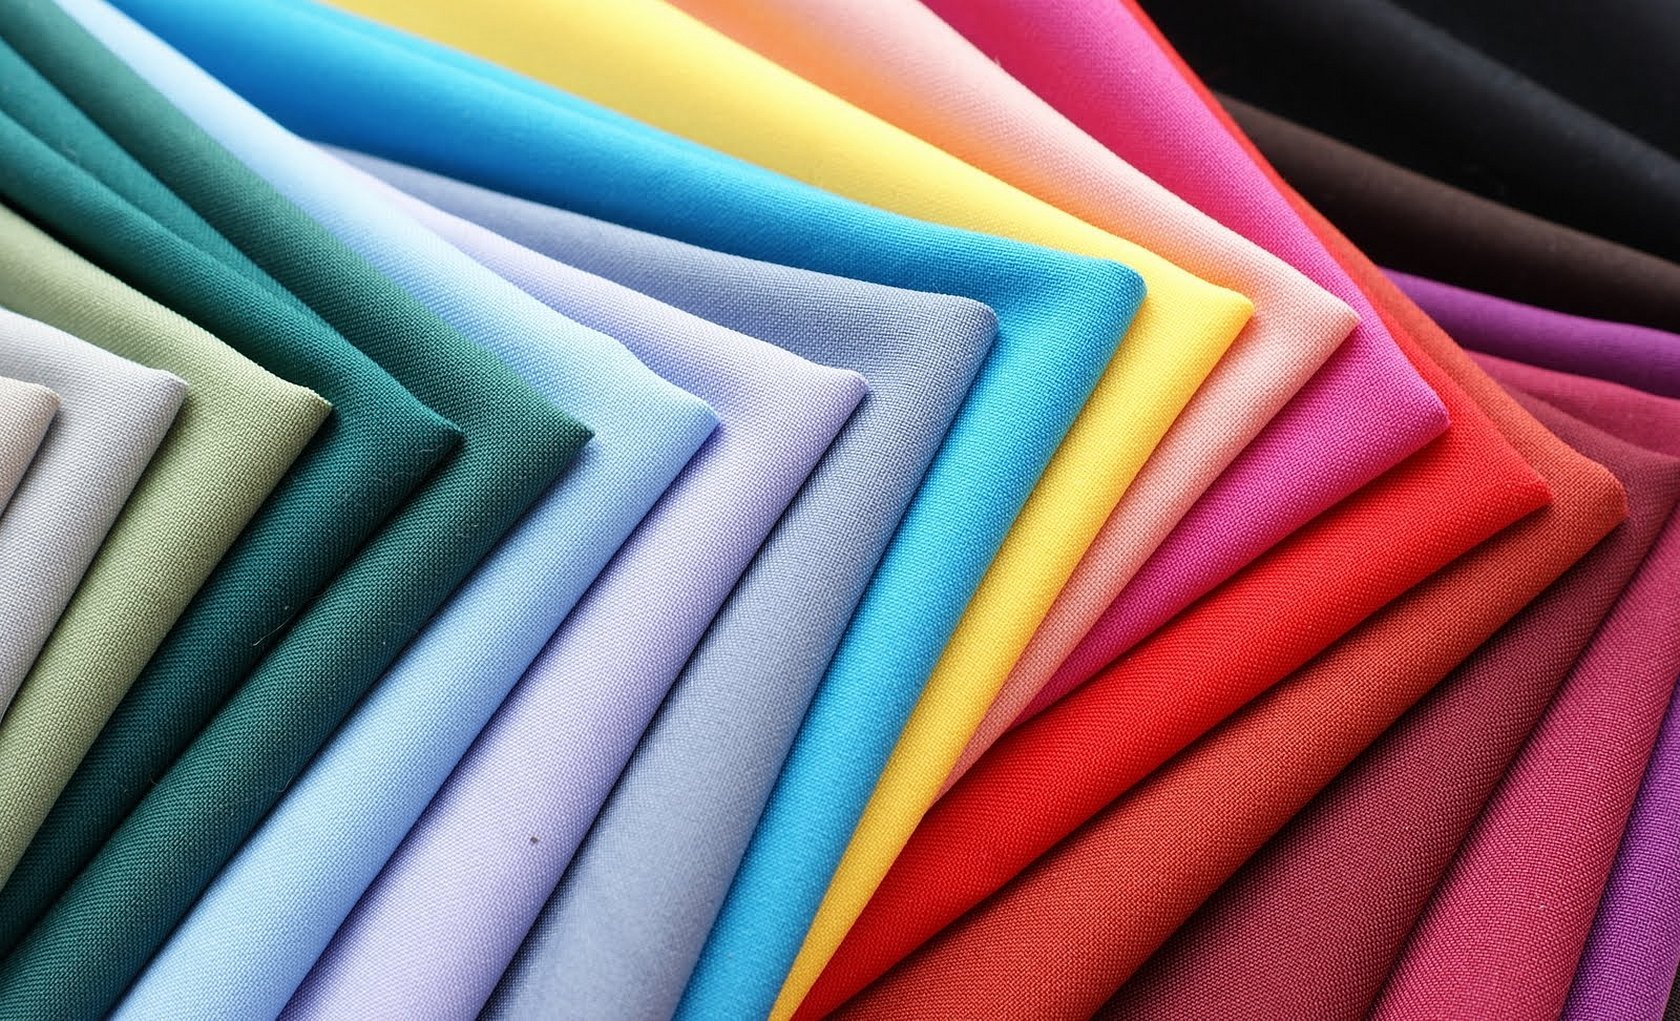 Ткани для одежды